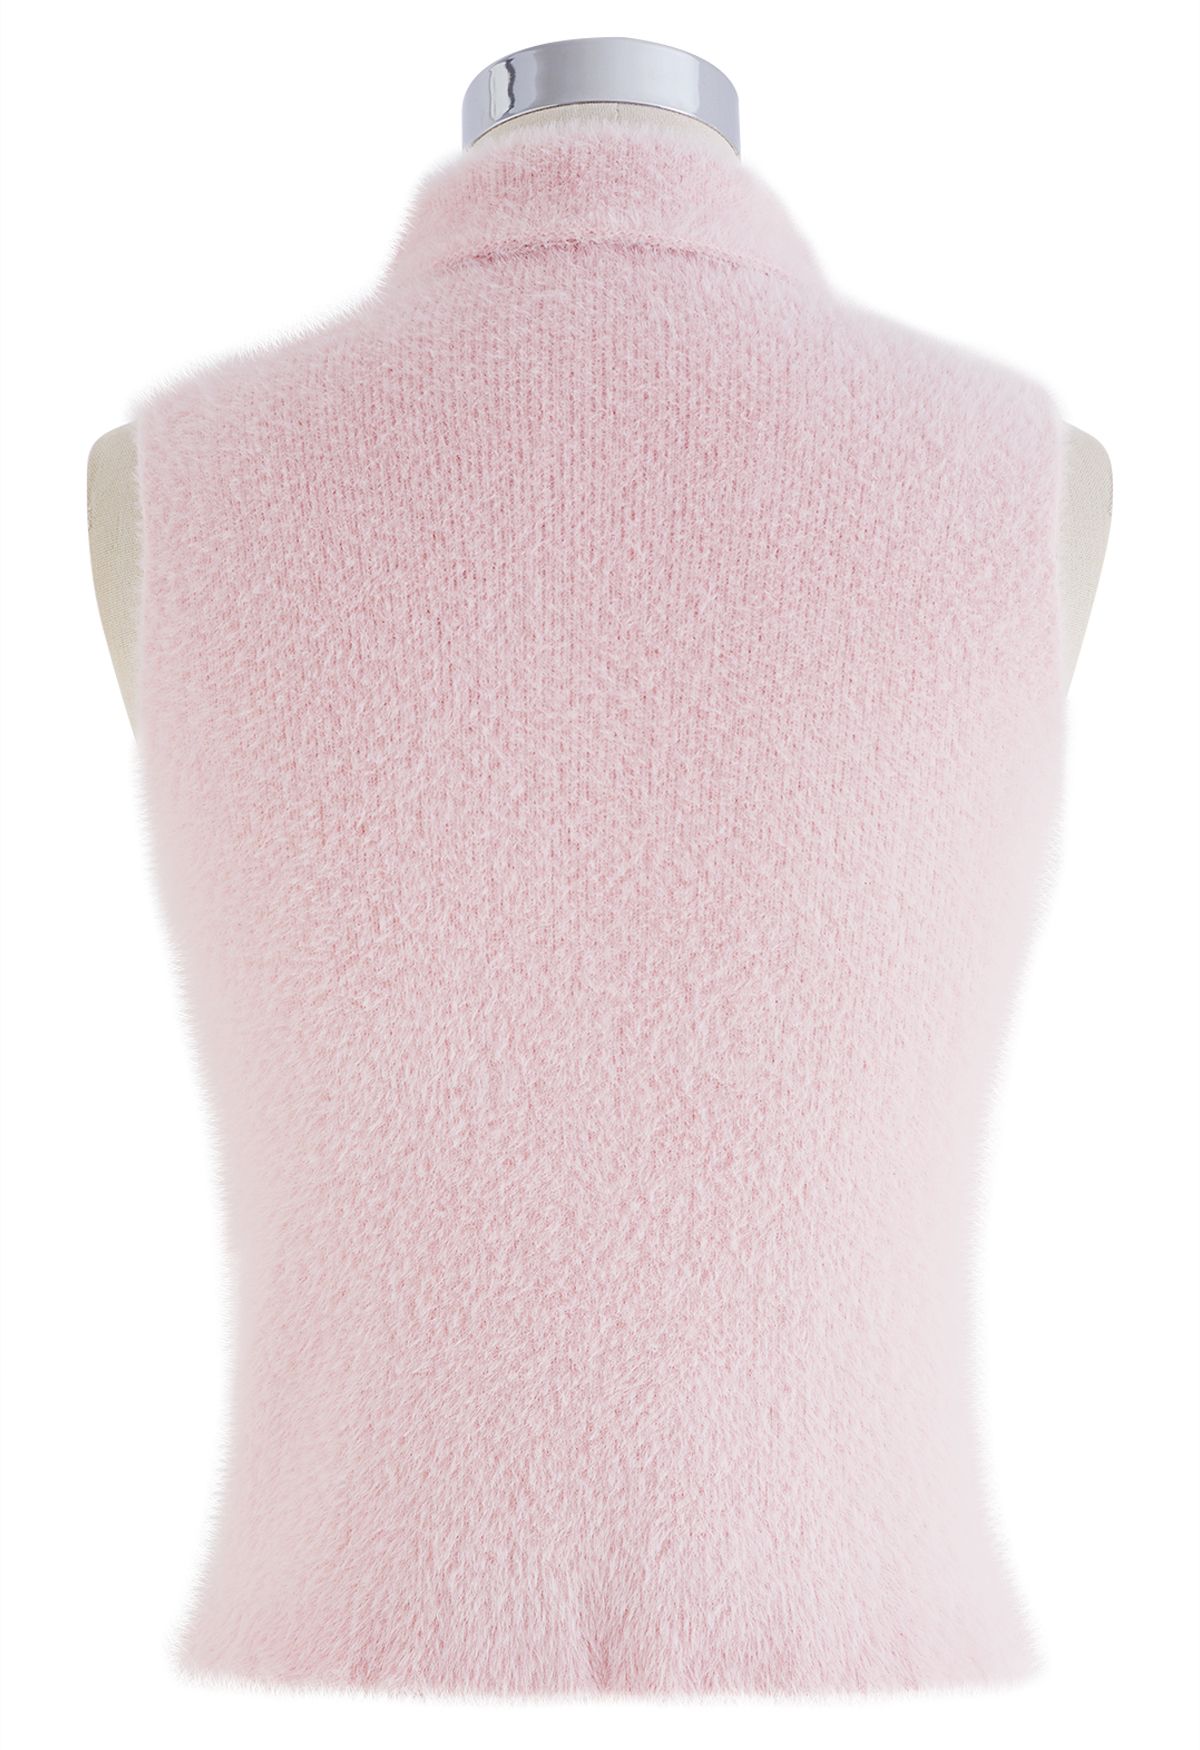 Camiseta sin mangas de punto difuso con cuello alto en rosa